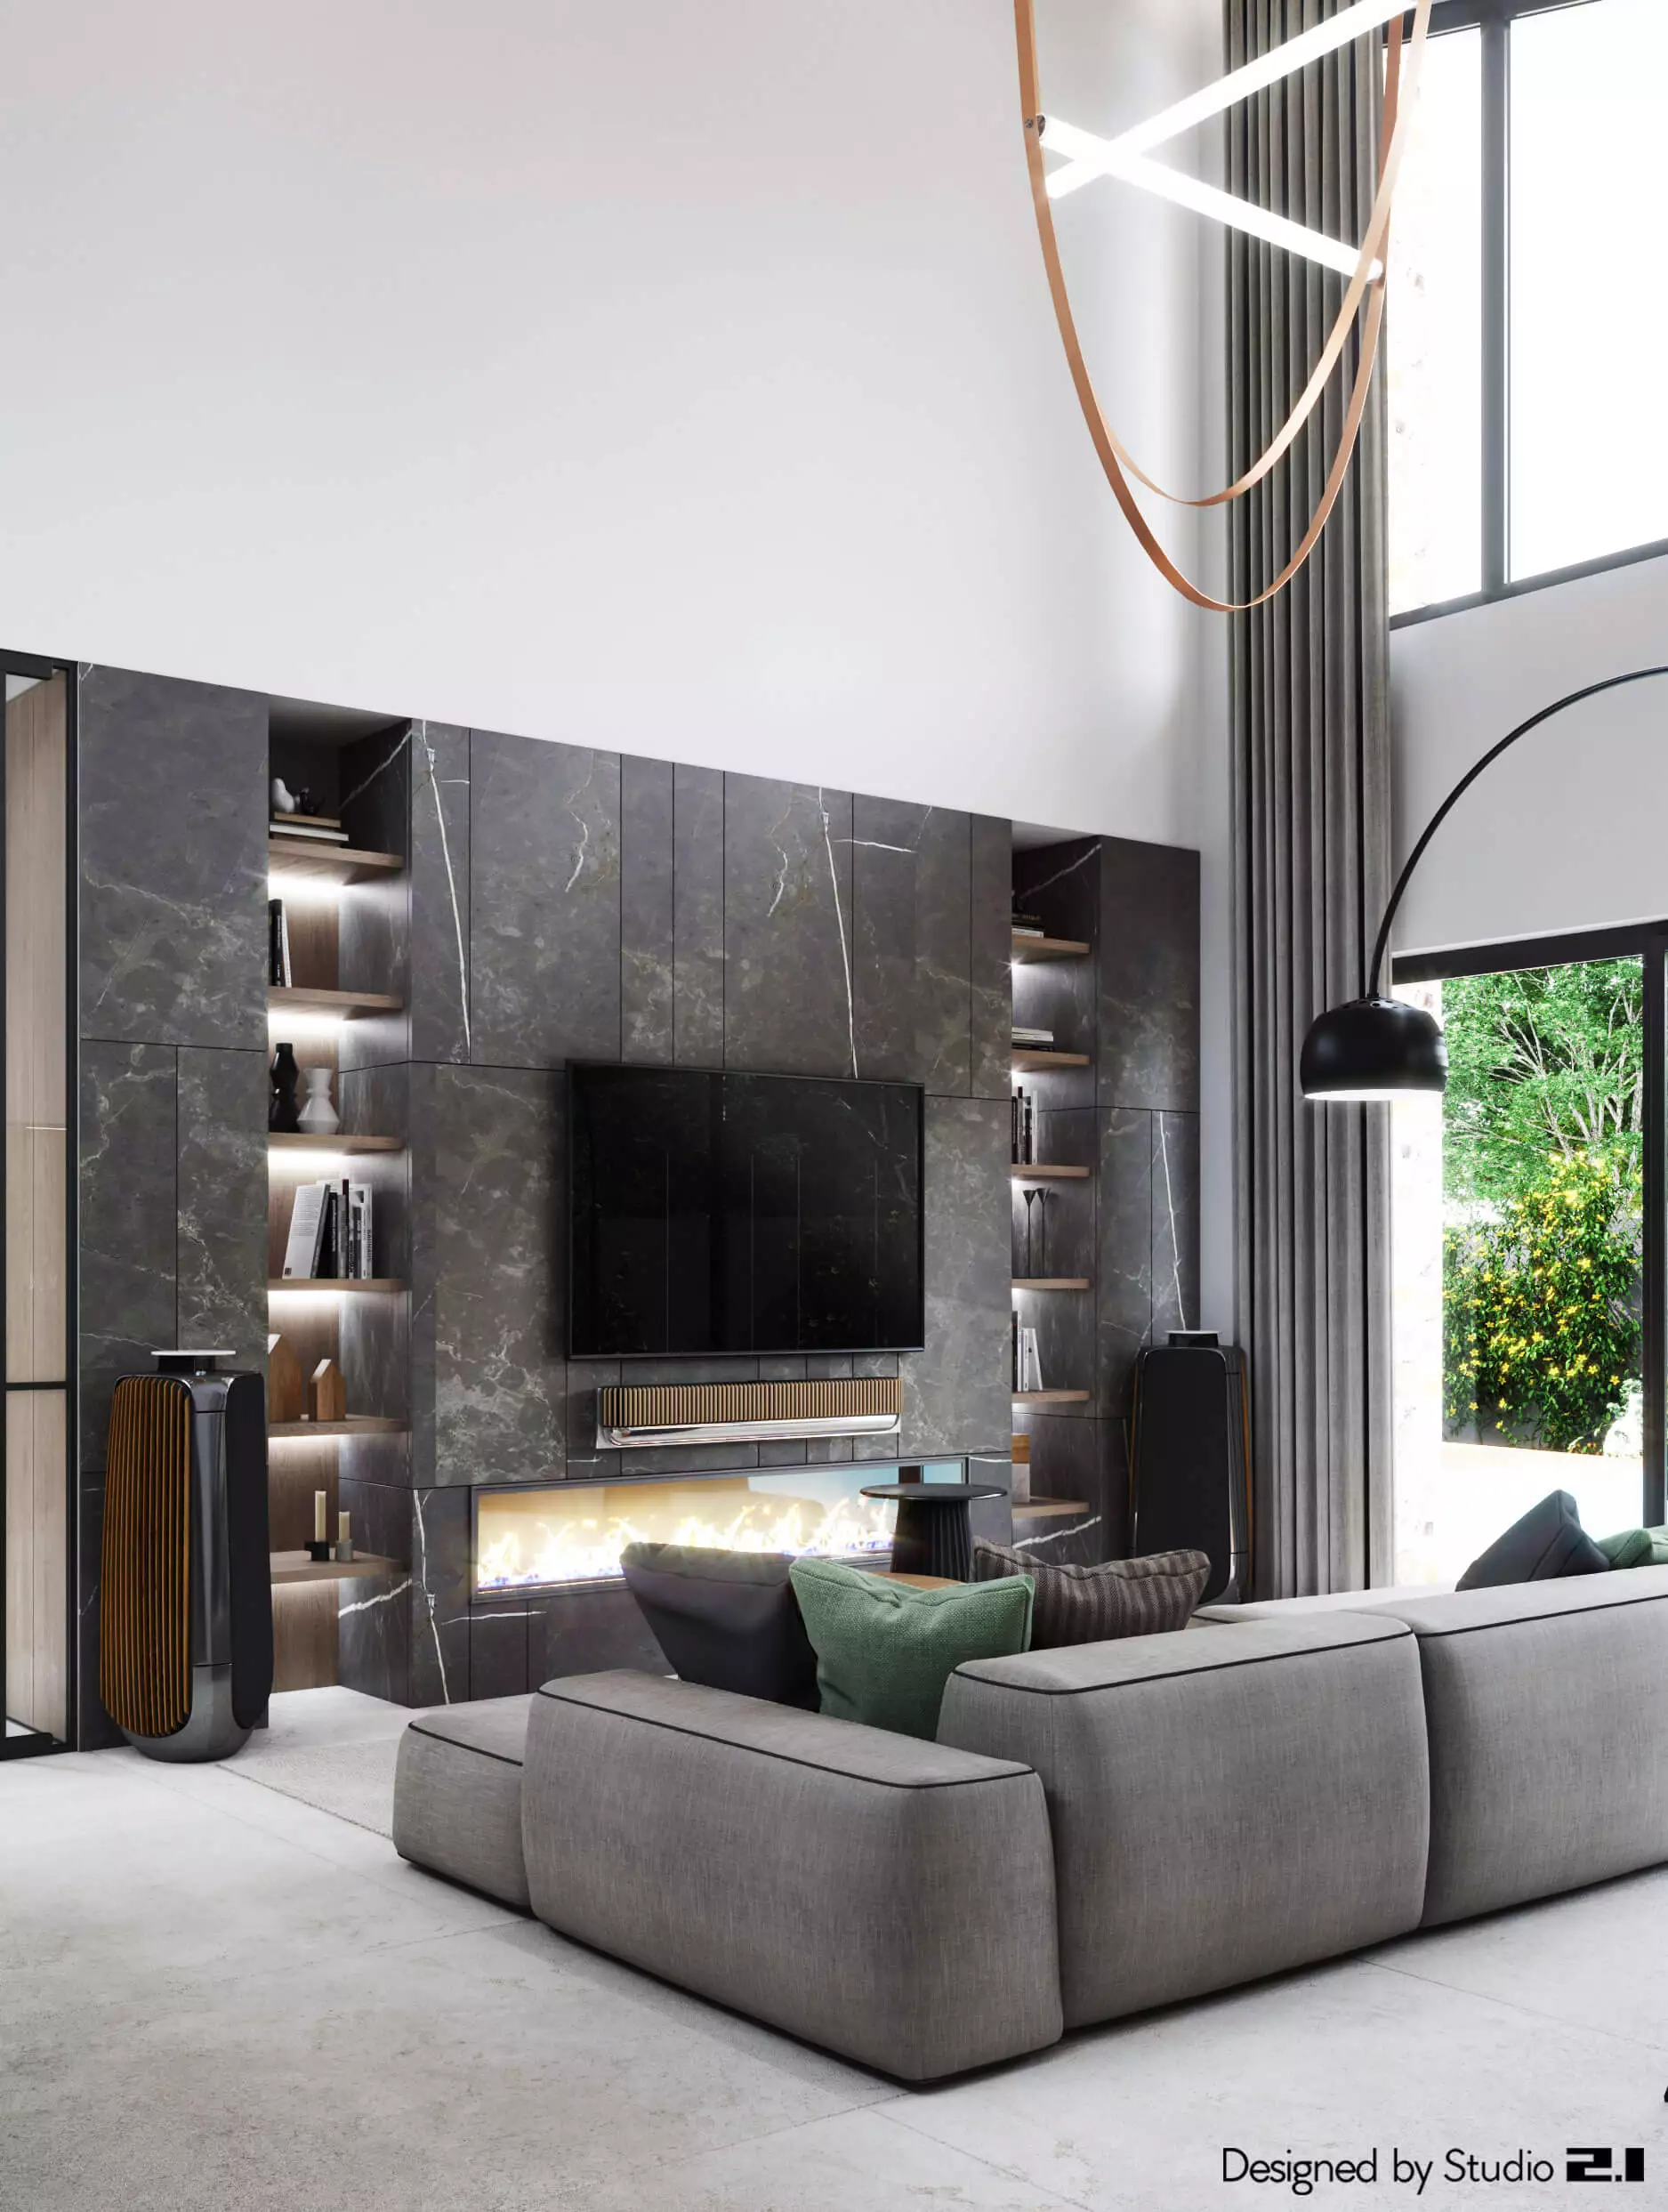 Design interior realizat de Studio 2.1 intr-un stil modern, minimalist cu accente de negru dar totodata o atmosfera calda data de culoarea lemnului natural.